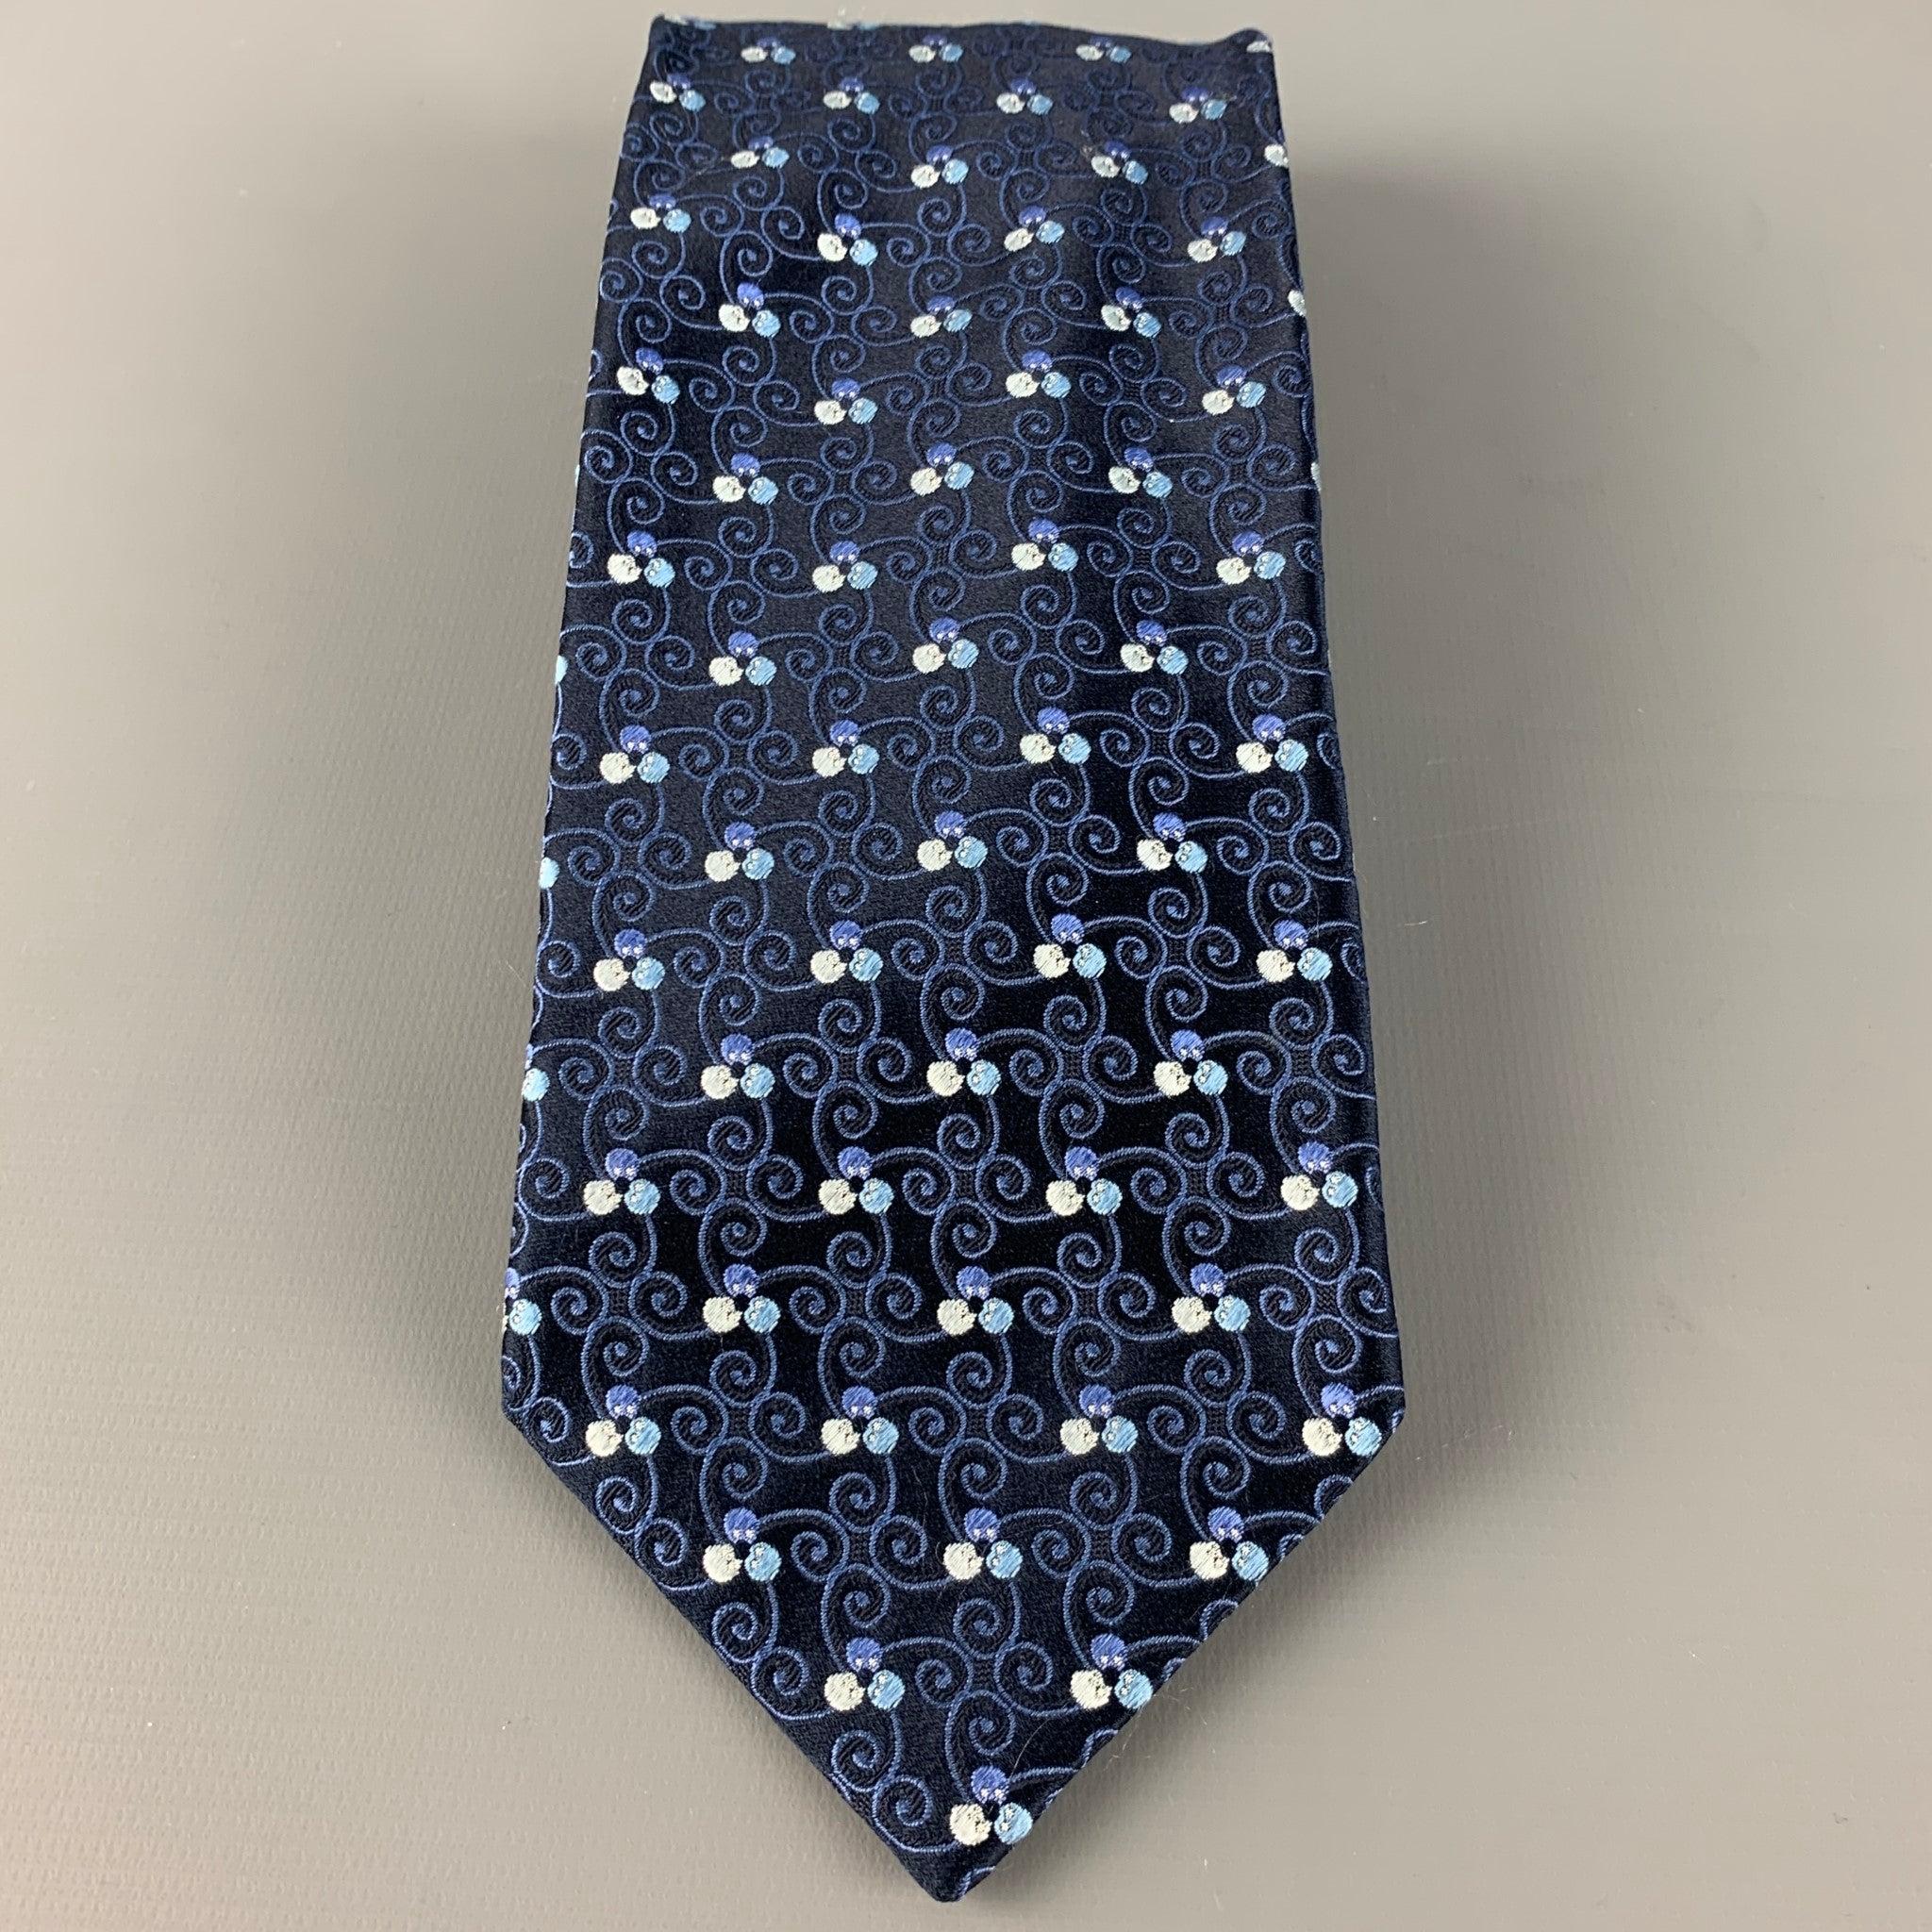 Cravate ERMENEGILDO Zegna en satin de soie noir avec un motif tourbillonnant bleu. Fabriqué en Italie. Très bon état. 

Mesures : 
  Largeur : 3.5 pouces Longueur : 60 pouces 
  
  
 
Référence Sui Generis : 126563
Catégorie : Cravate
Plus de